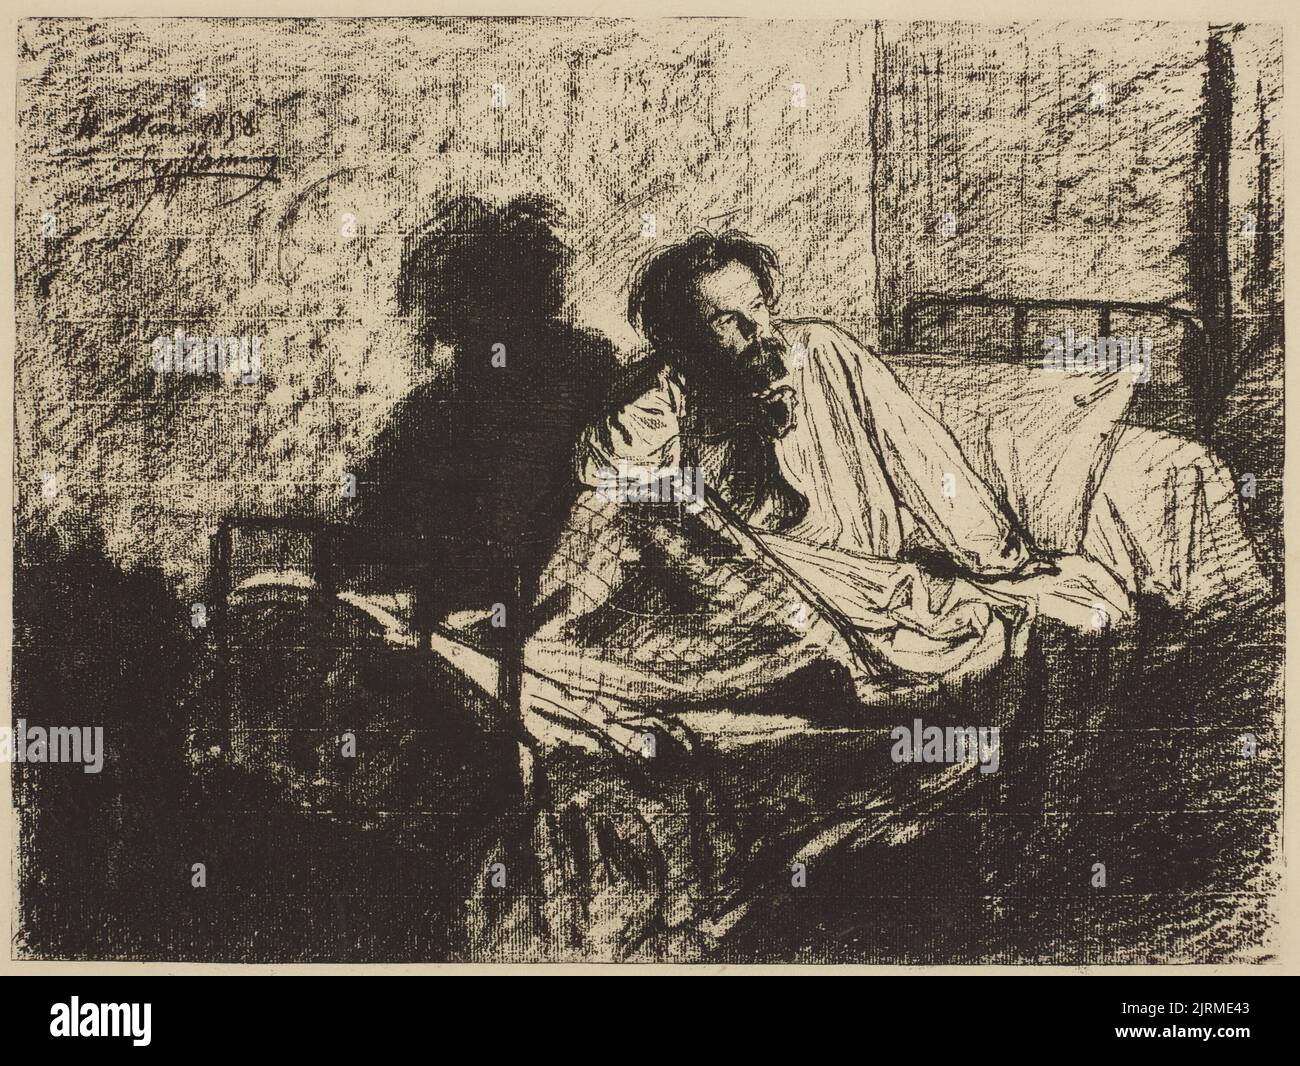 Porträt von Charles Meryon auf seinem Krankenbett., 1858, Frankreich, von Léopold Flameng. Geschenk von Sir John Ilott, 1962. Stockfoto